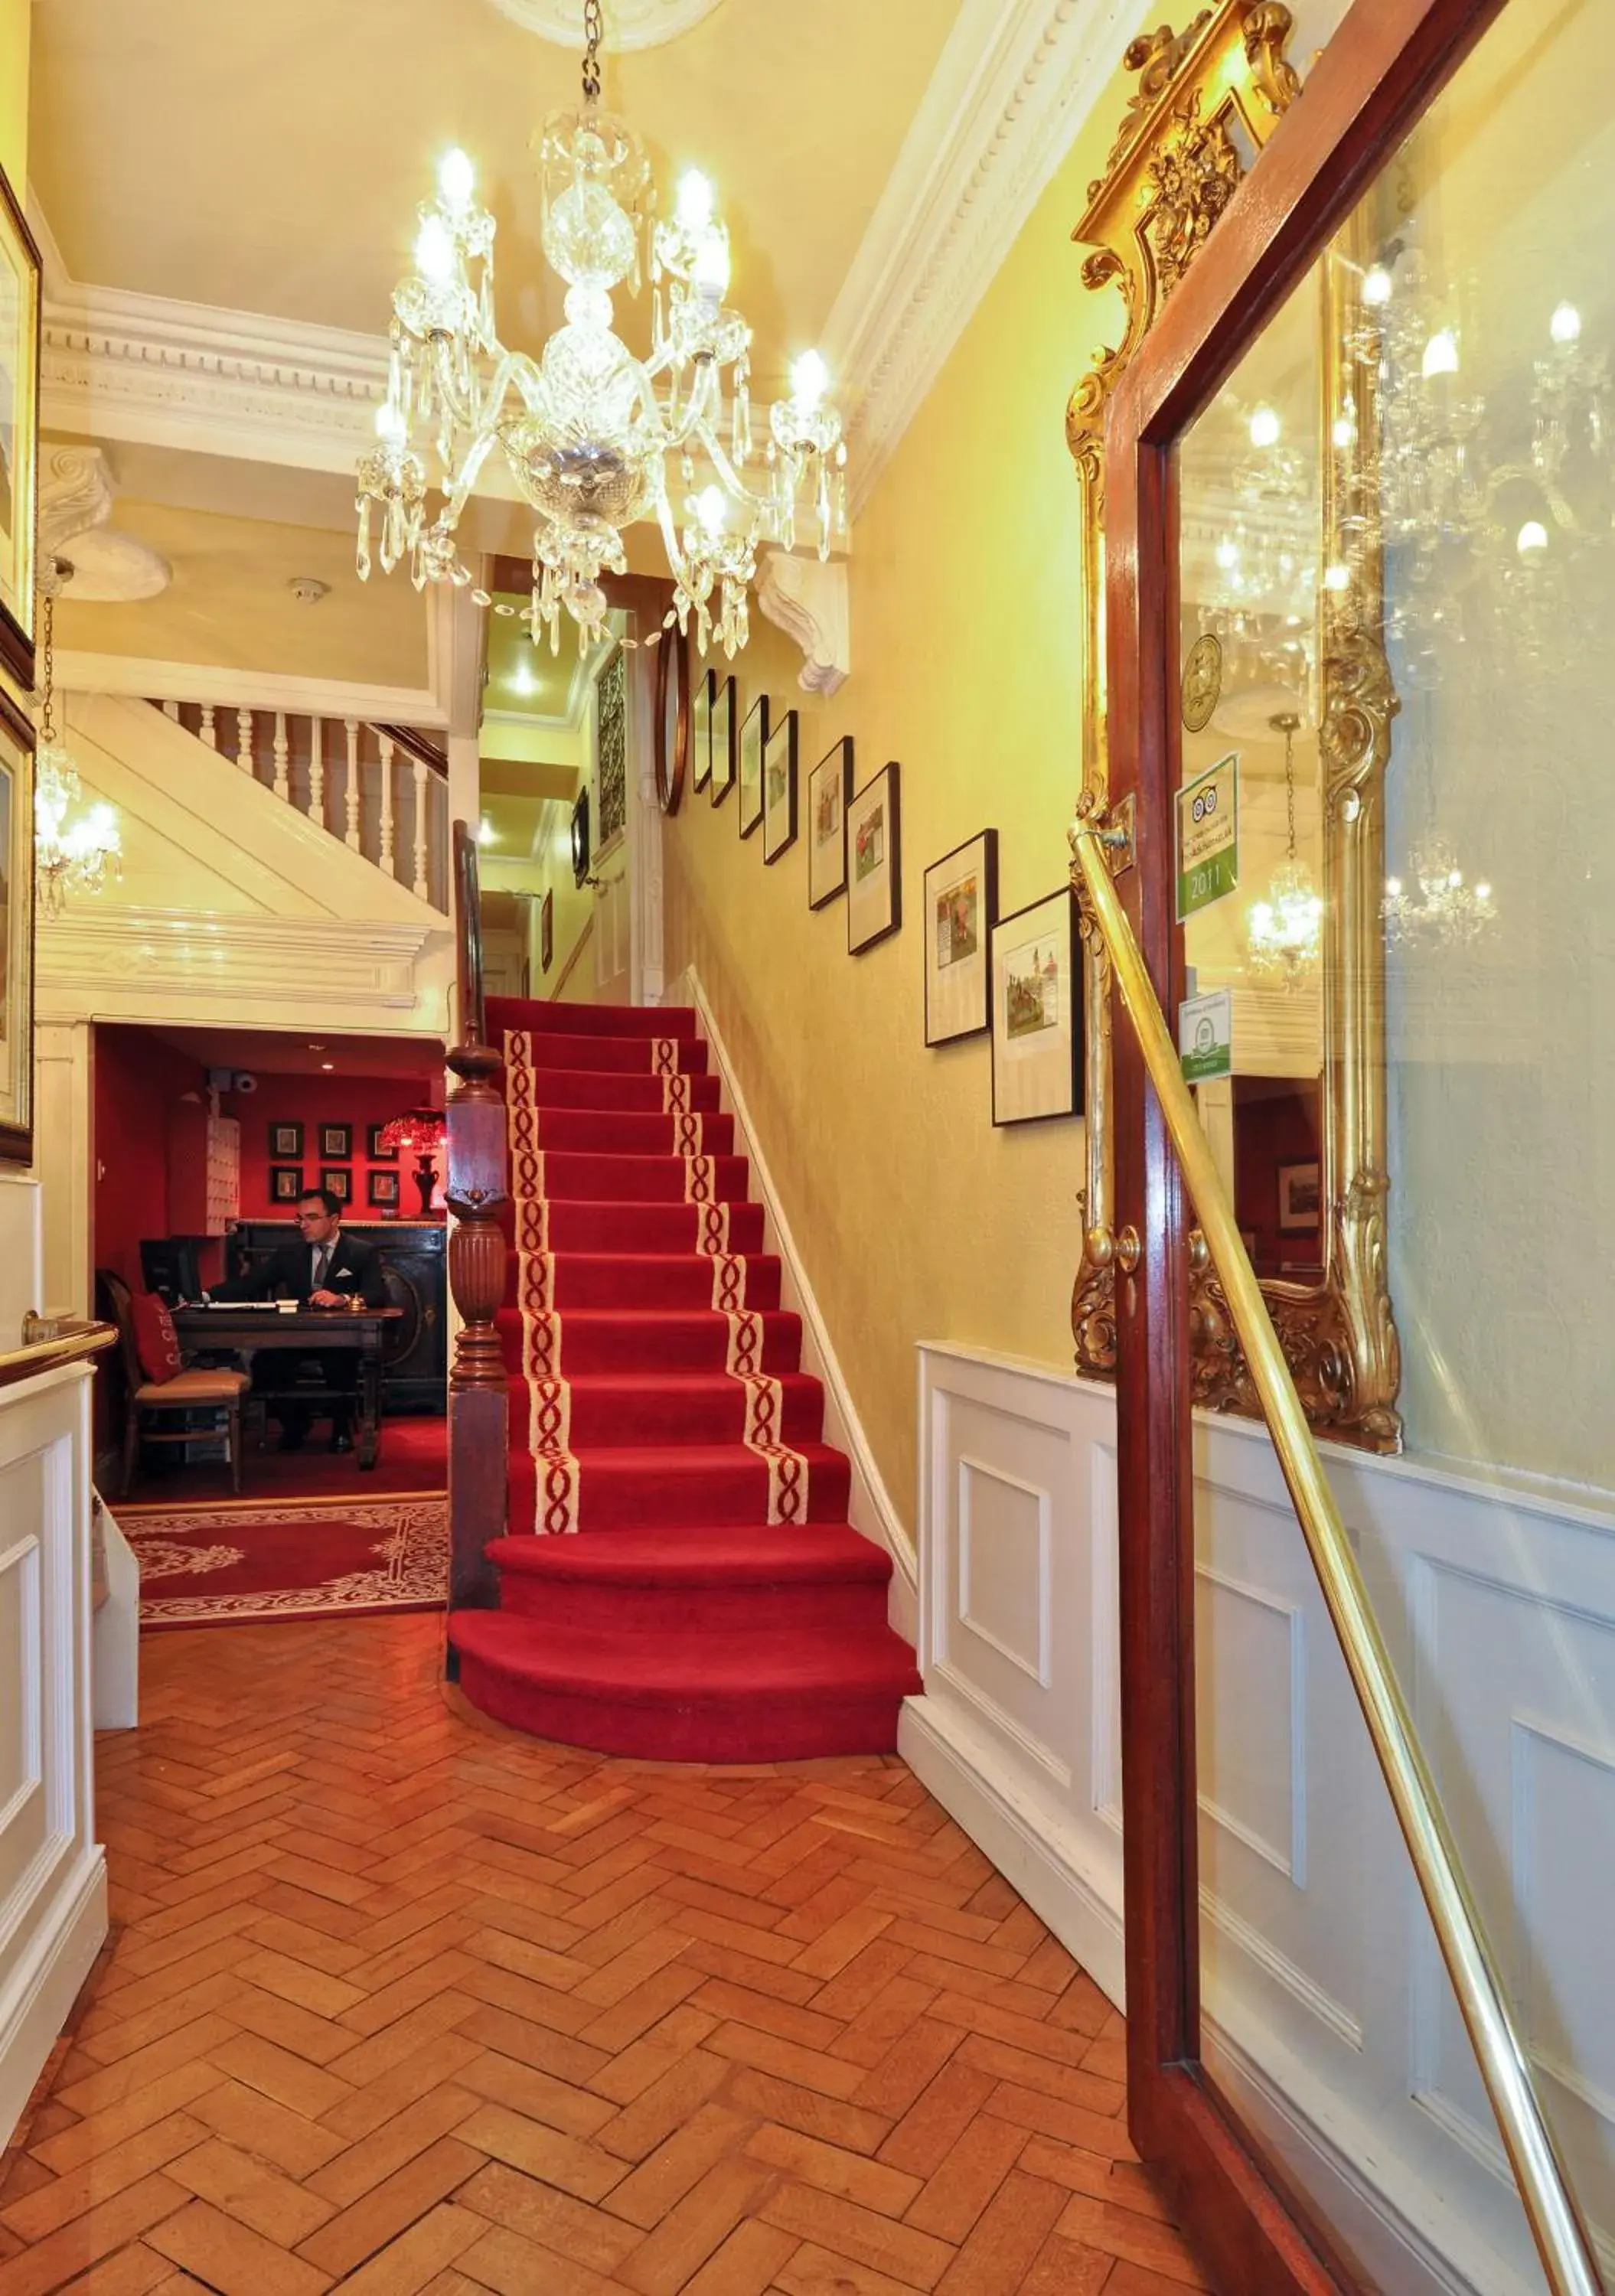 Lobby or reception, Lobby/Reception in Kilronan House